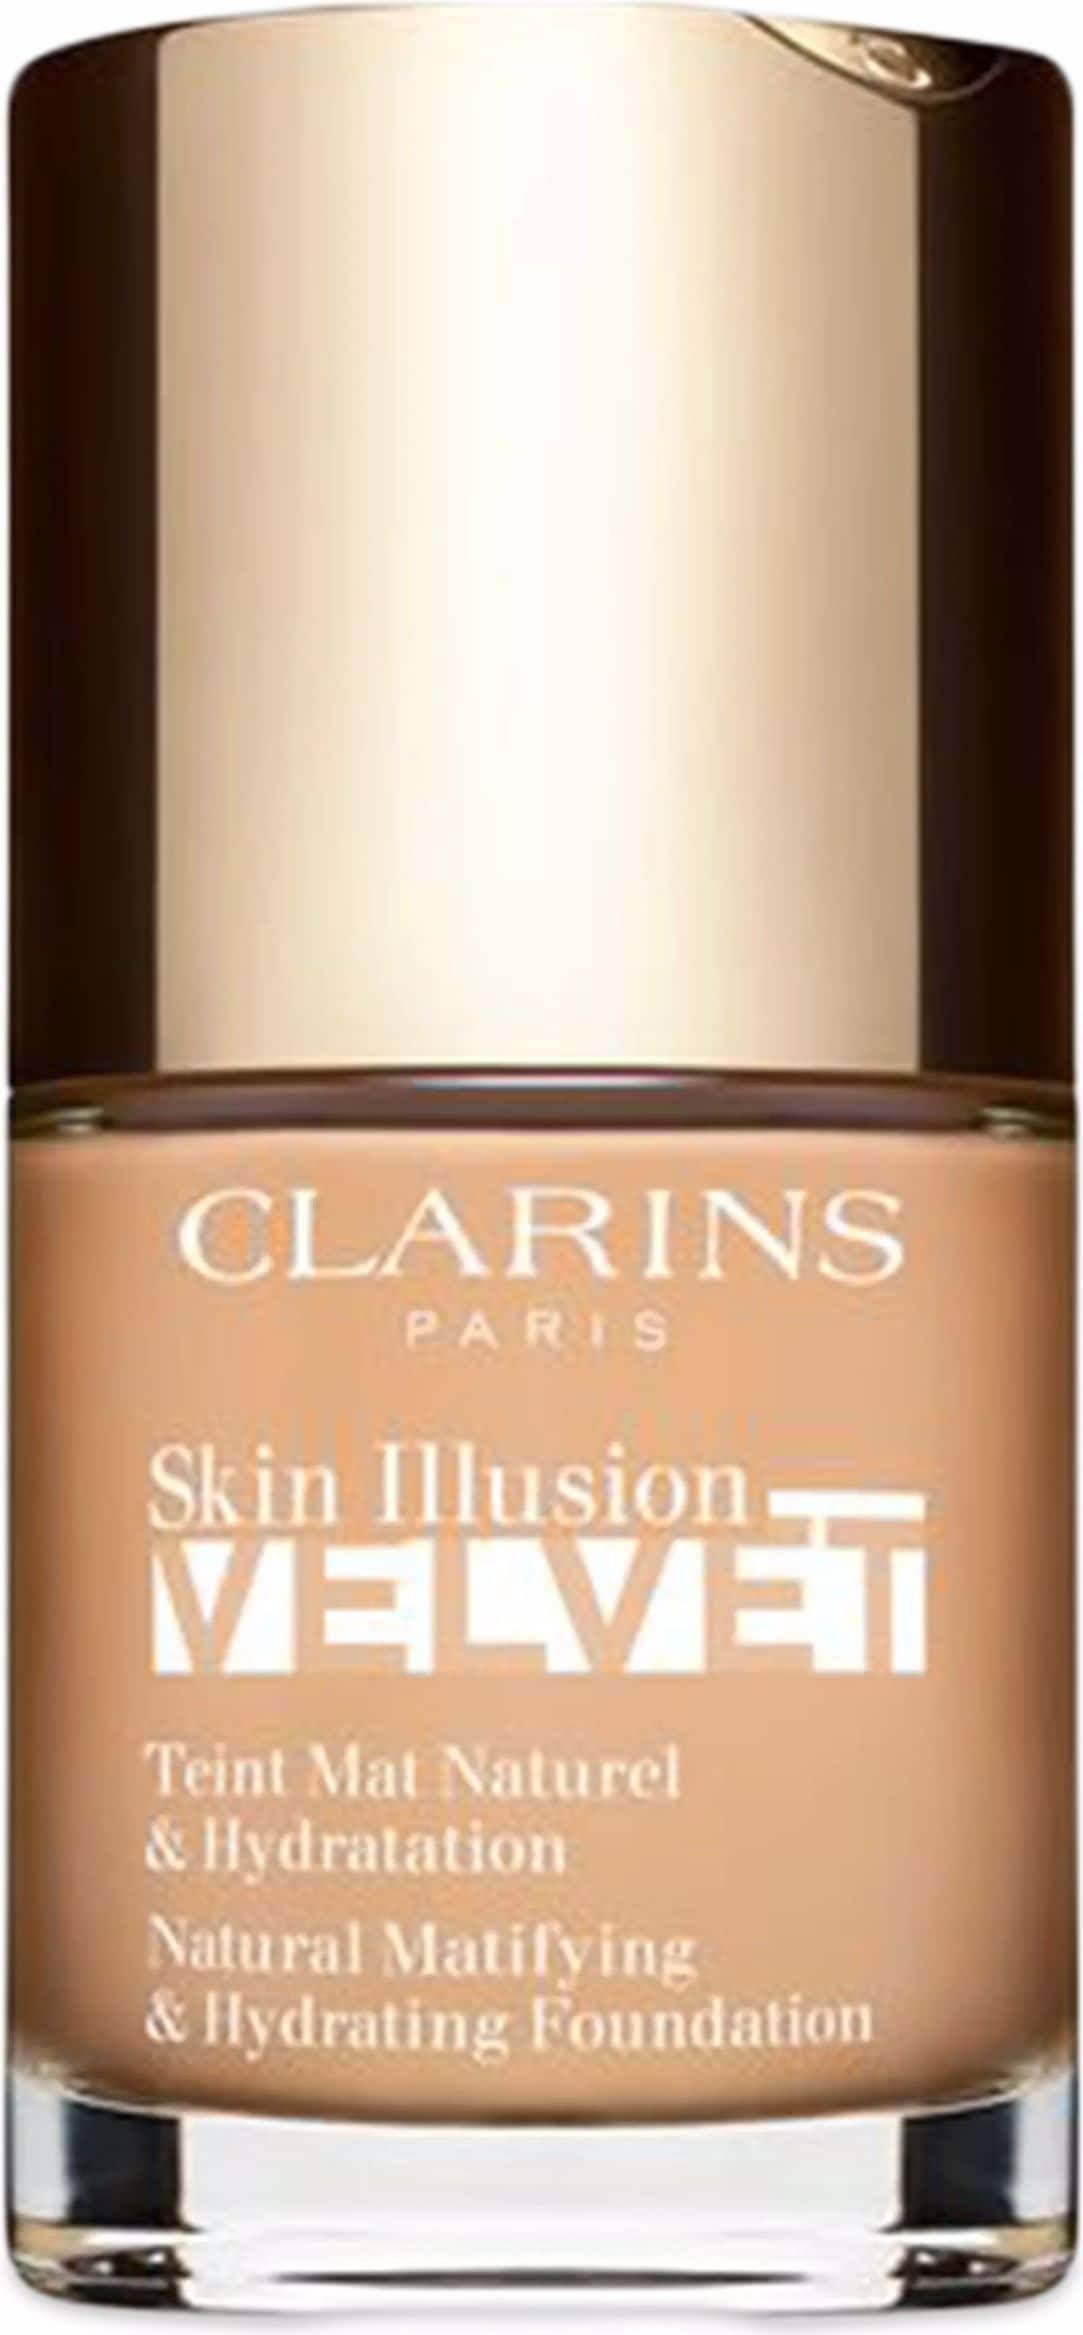 Clarins Skin Illusion Velvet